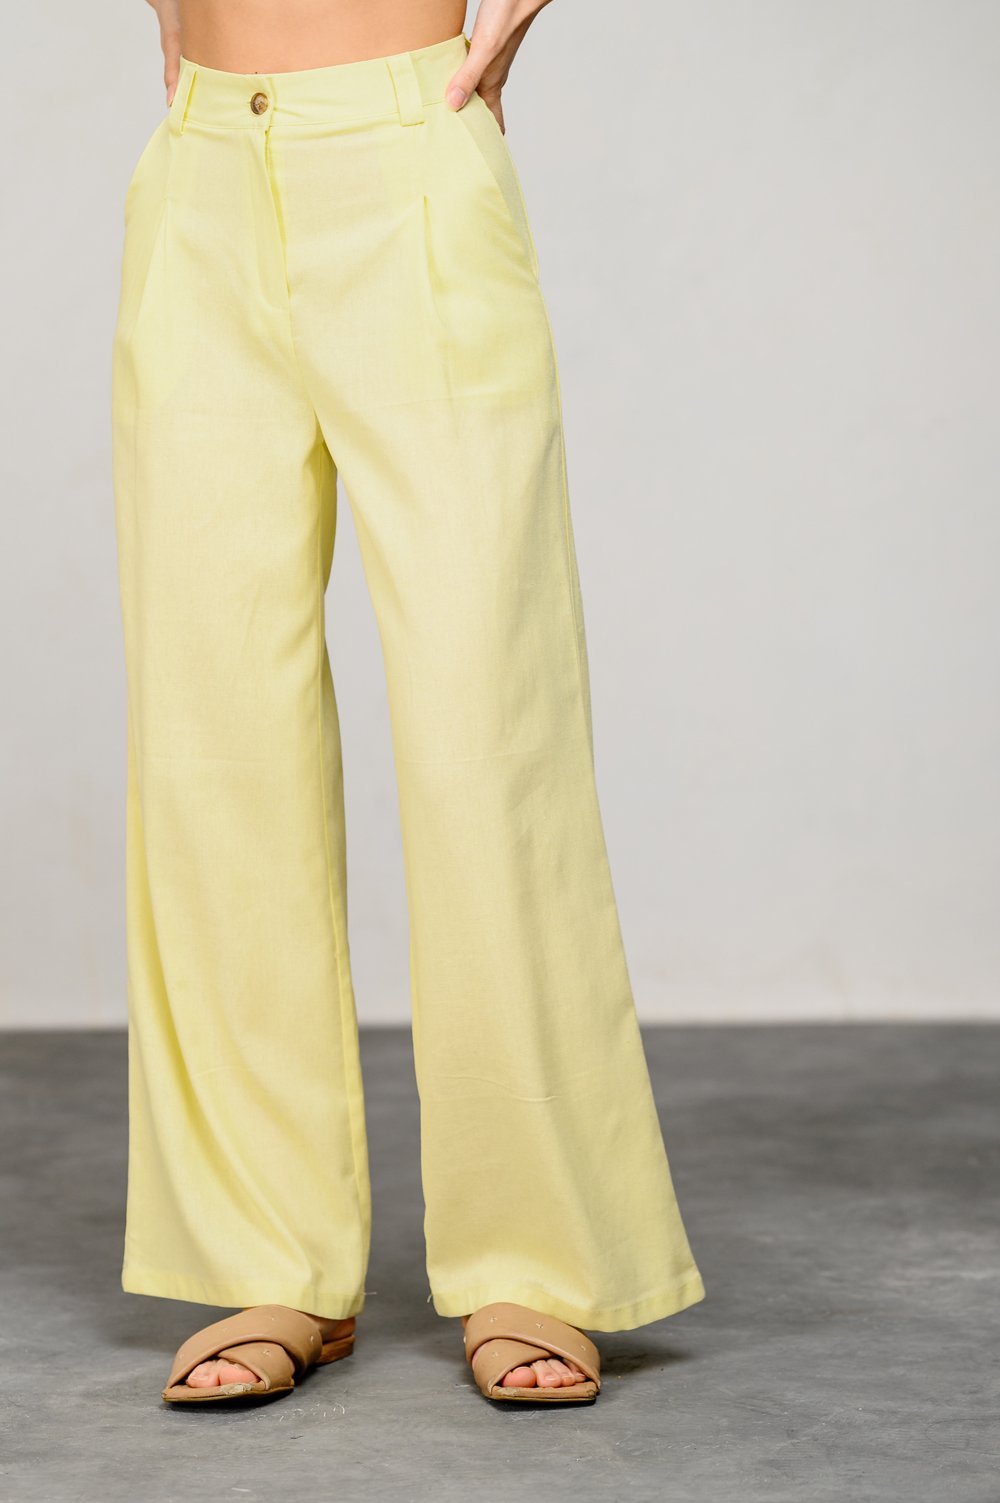 Лляні штани лимонного кольору